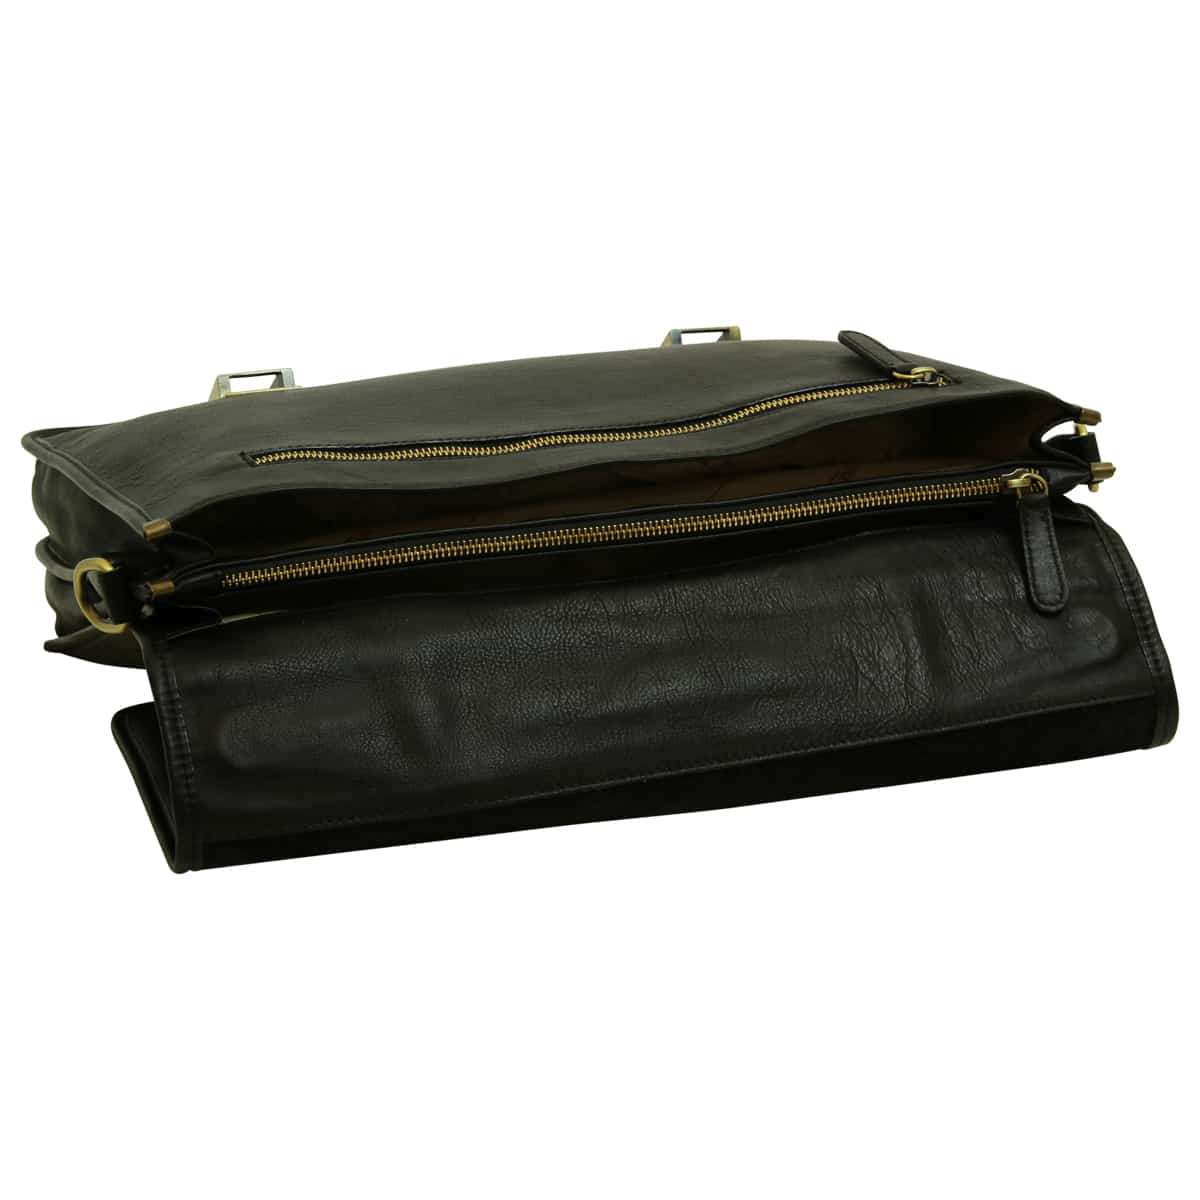 Soft Calfskin Leather Briefcase with shoulder strap - Black | 030991NE UK | Old Angler Firenze